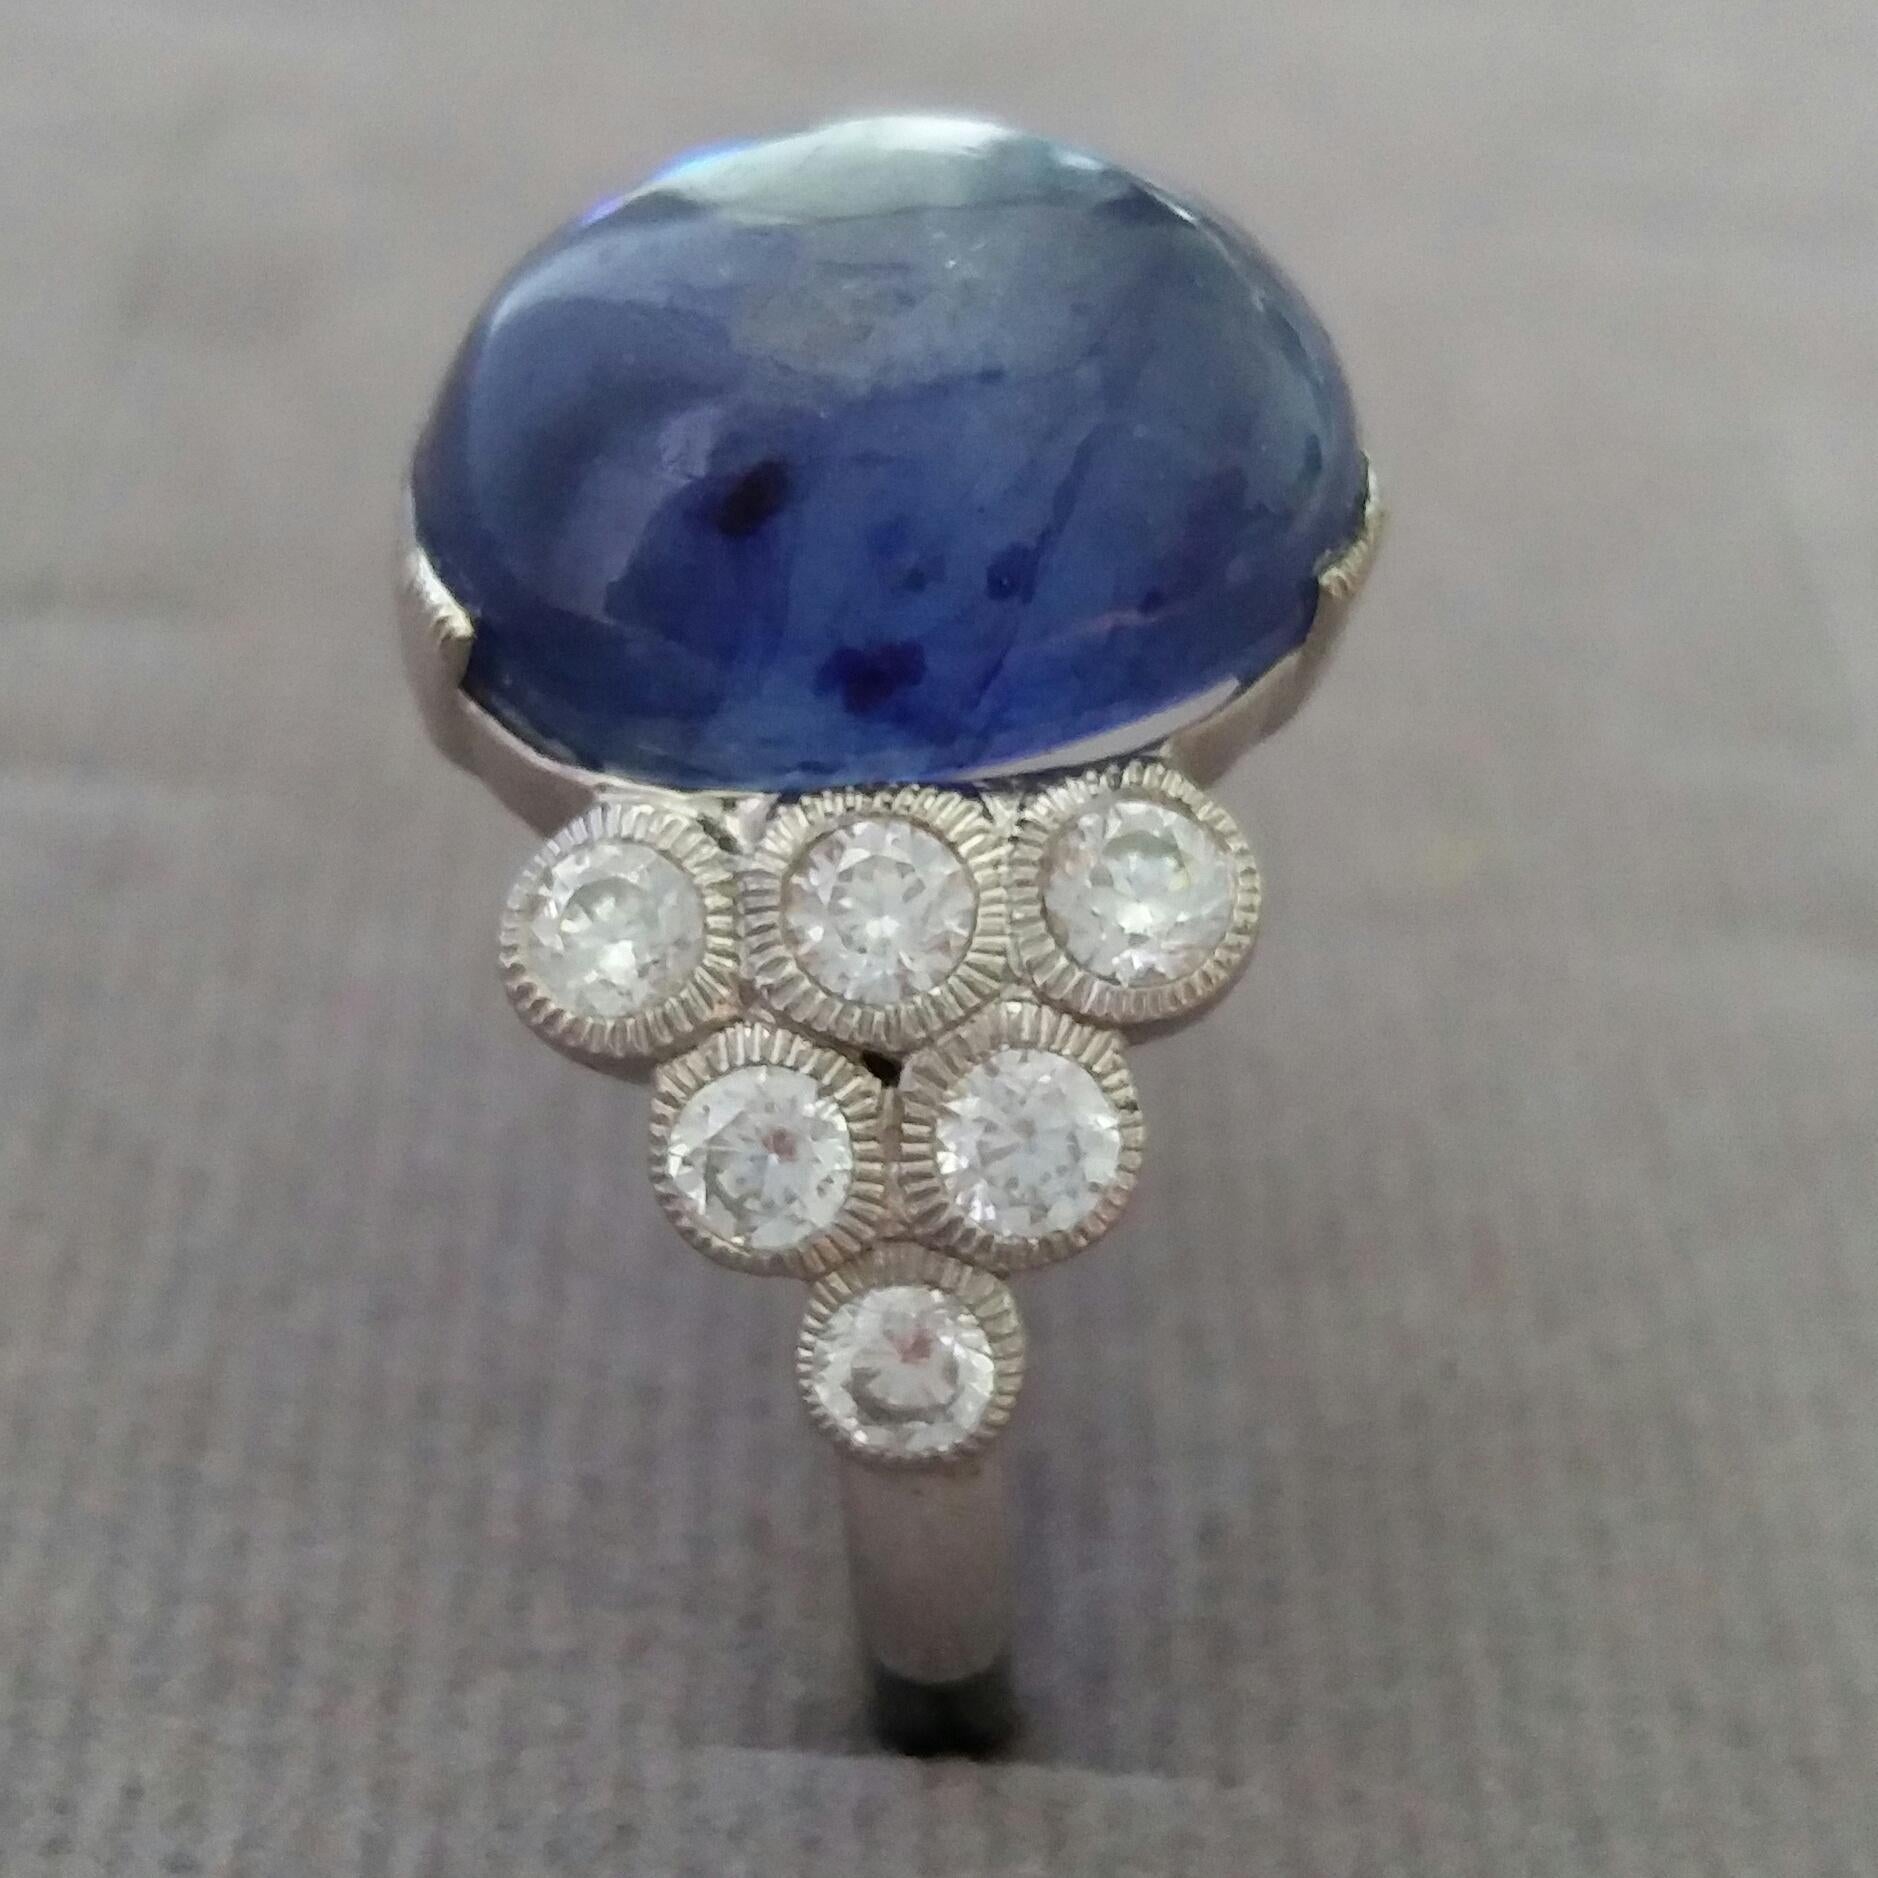 13 Carats Blue Sapphire cab ovale ( 13,4 mm. x 11,3 mm.) serti de 3,5 grammes d'or blanc 14 carats, 12 diamants ronds de pleine taille de 0,05 ct. chacun = 0,6 carats poids total des diamants
Diamètre de la tige de l'anneau  21 mm
Hauteur 25